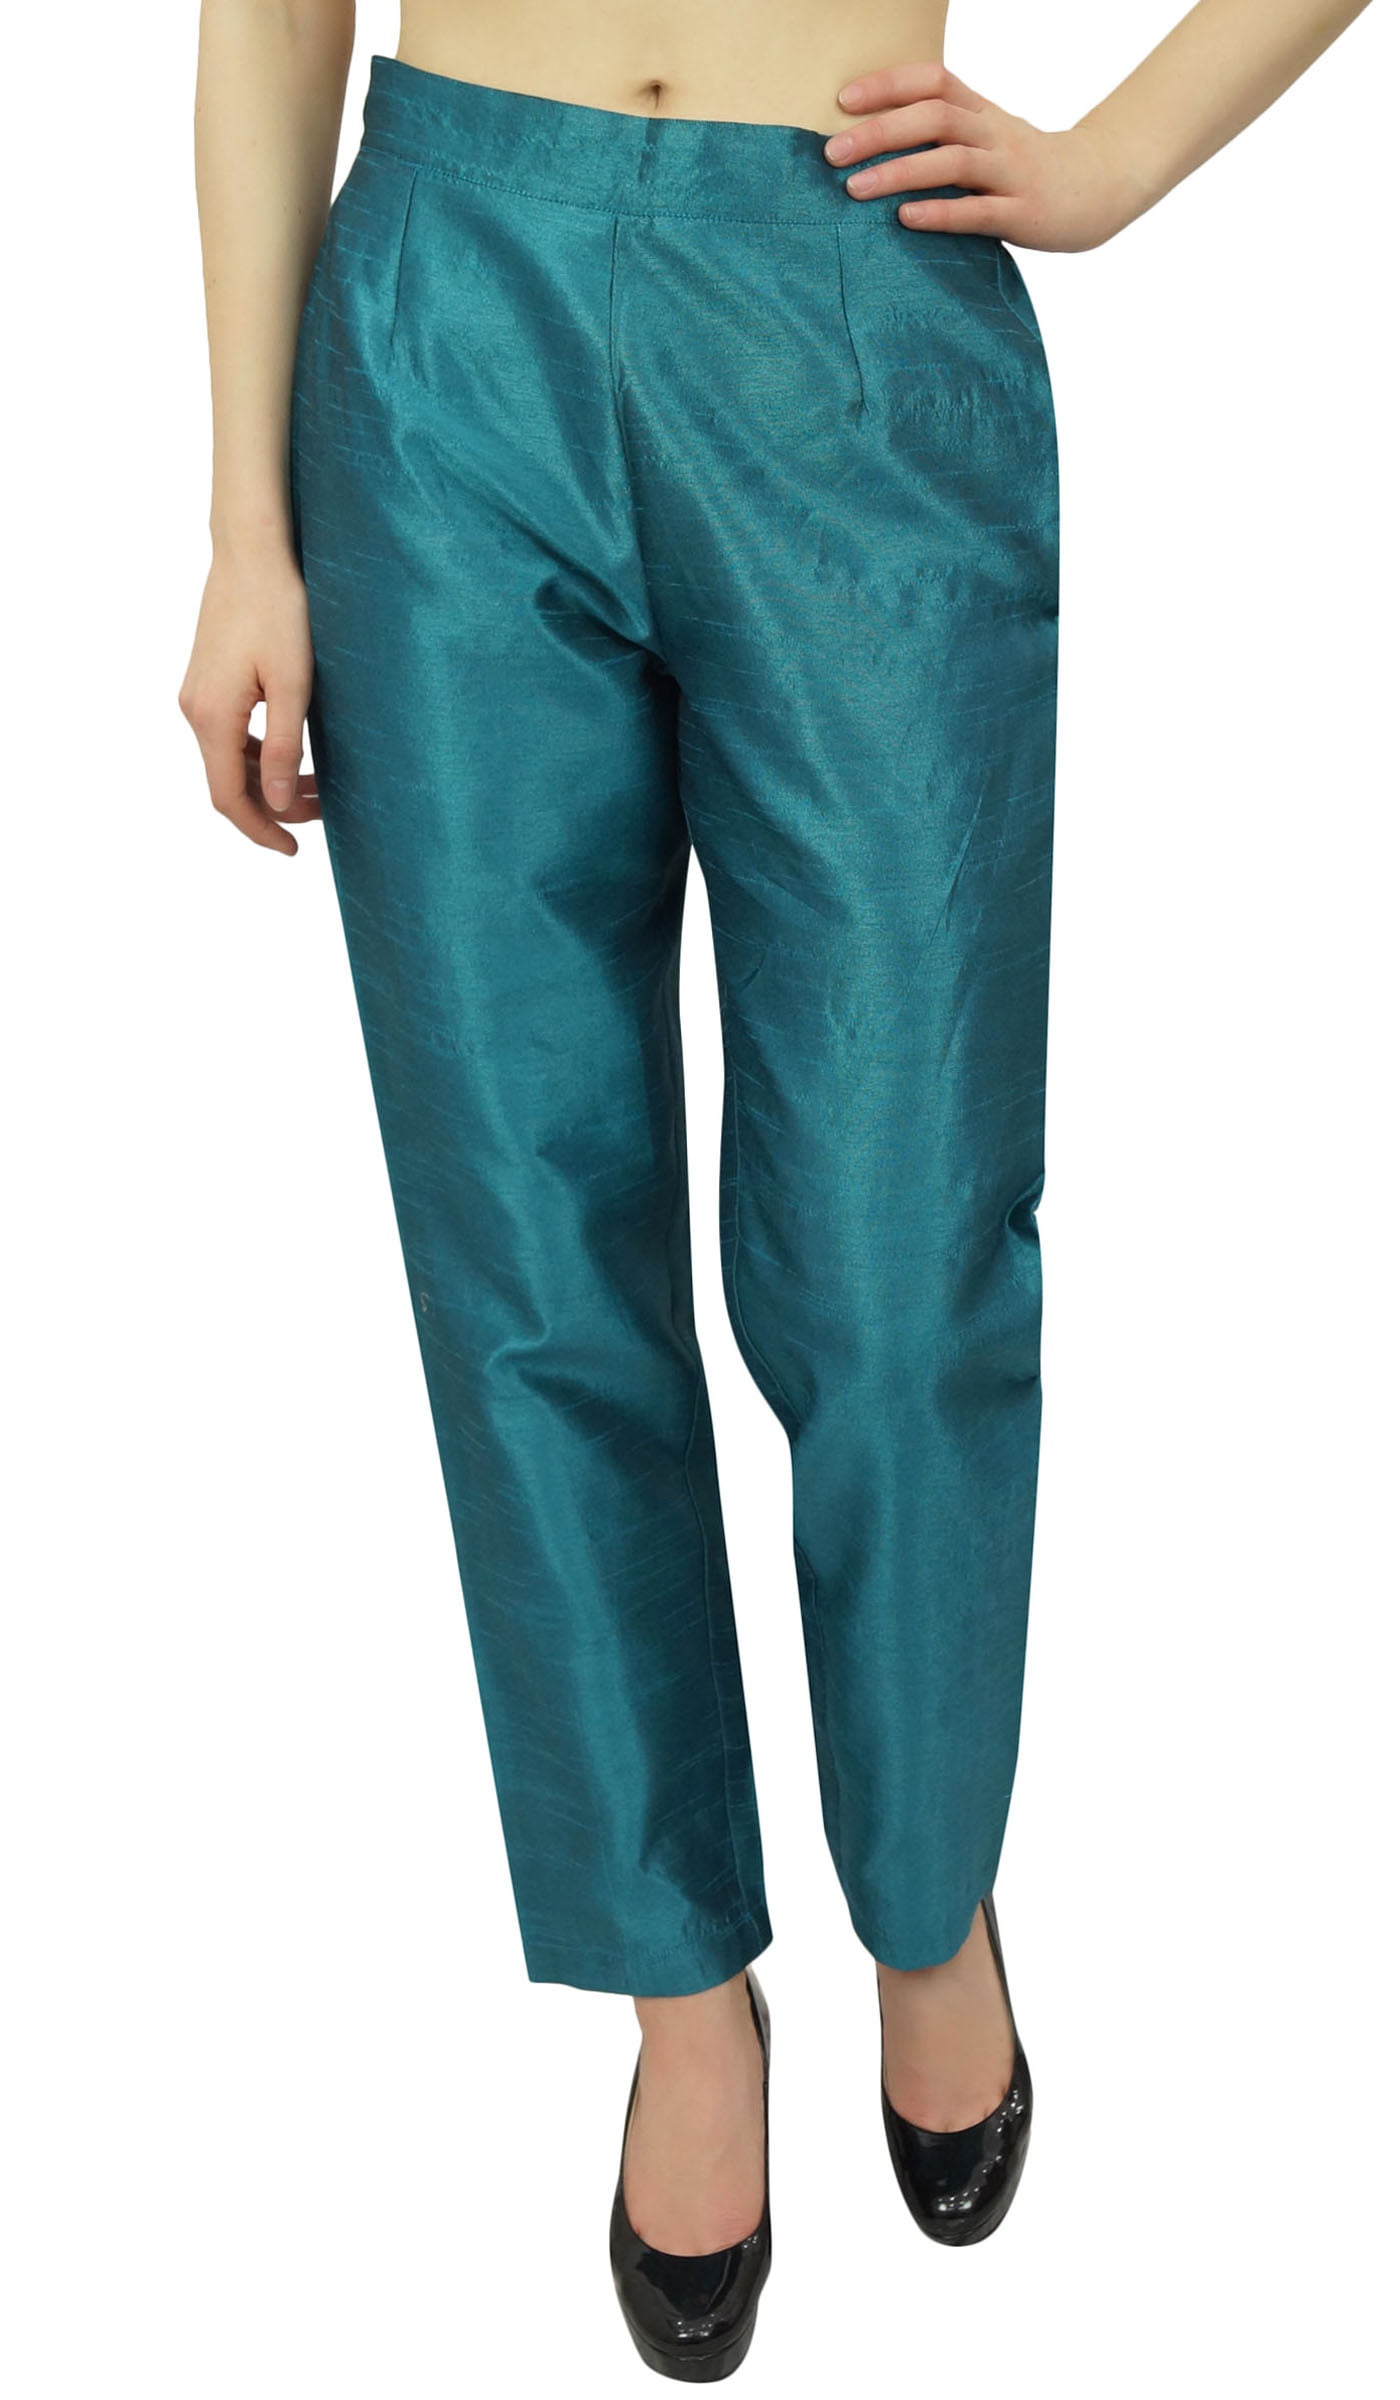 Phagun Women's Beige Dupion Pants High Waist Narrow Bottom  Trousers-XX-Large - Walmart.com